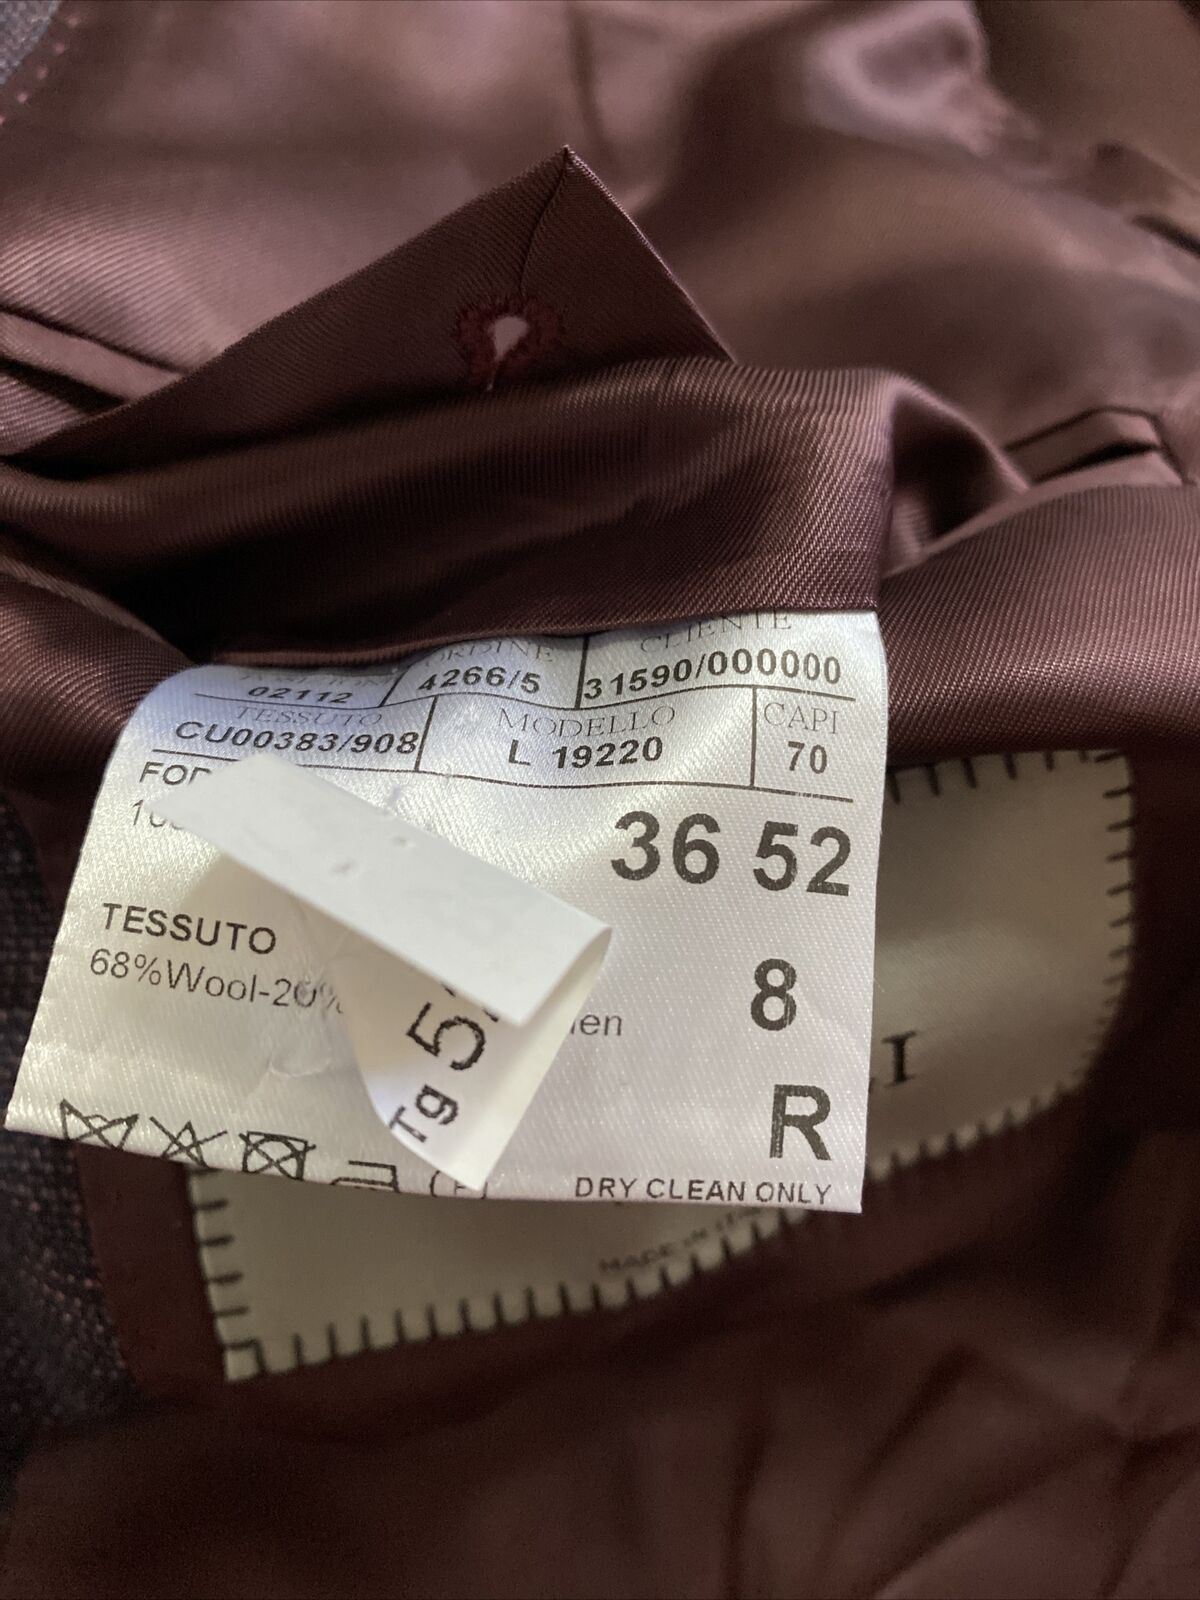 СЗТ $1695 Canali Мужская куртка Блейзер Фиолетовый Мульти 42R США (52R ЕС) Италия